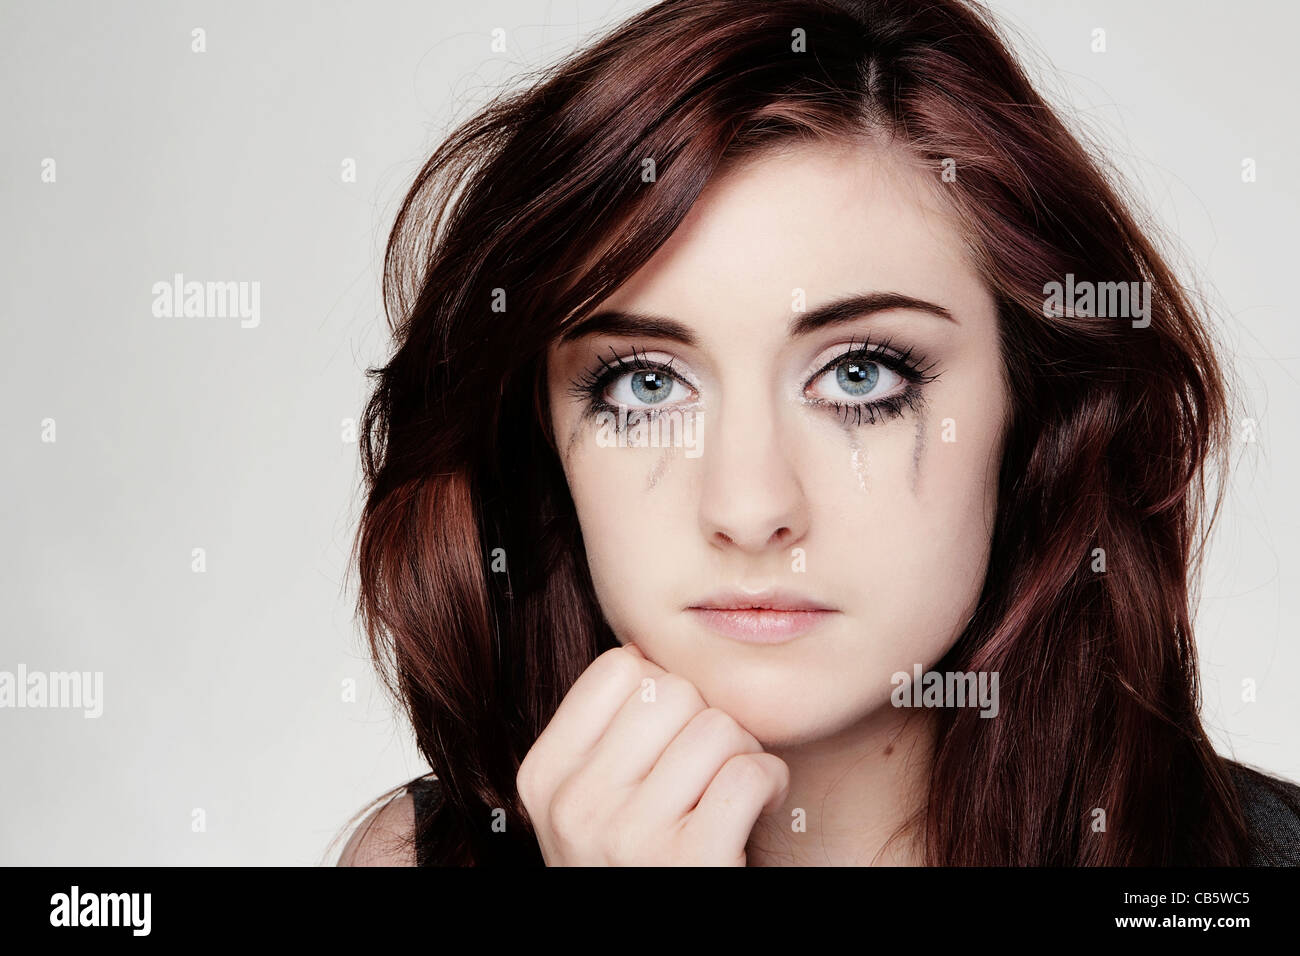 Porträt einer jungen Frau, die weint Make-up Gesicht Nahaufnahme Stockfoto